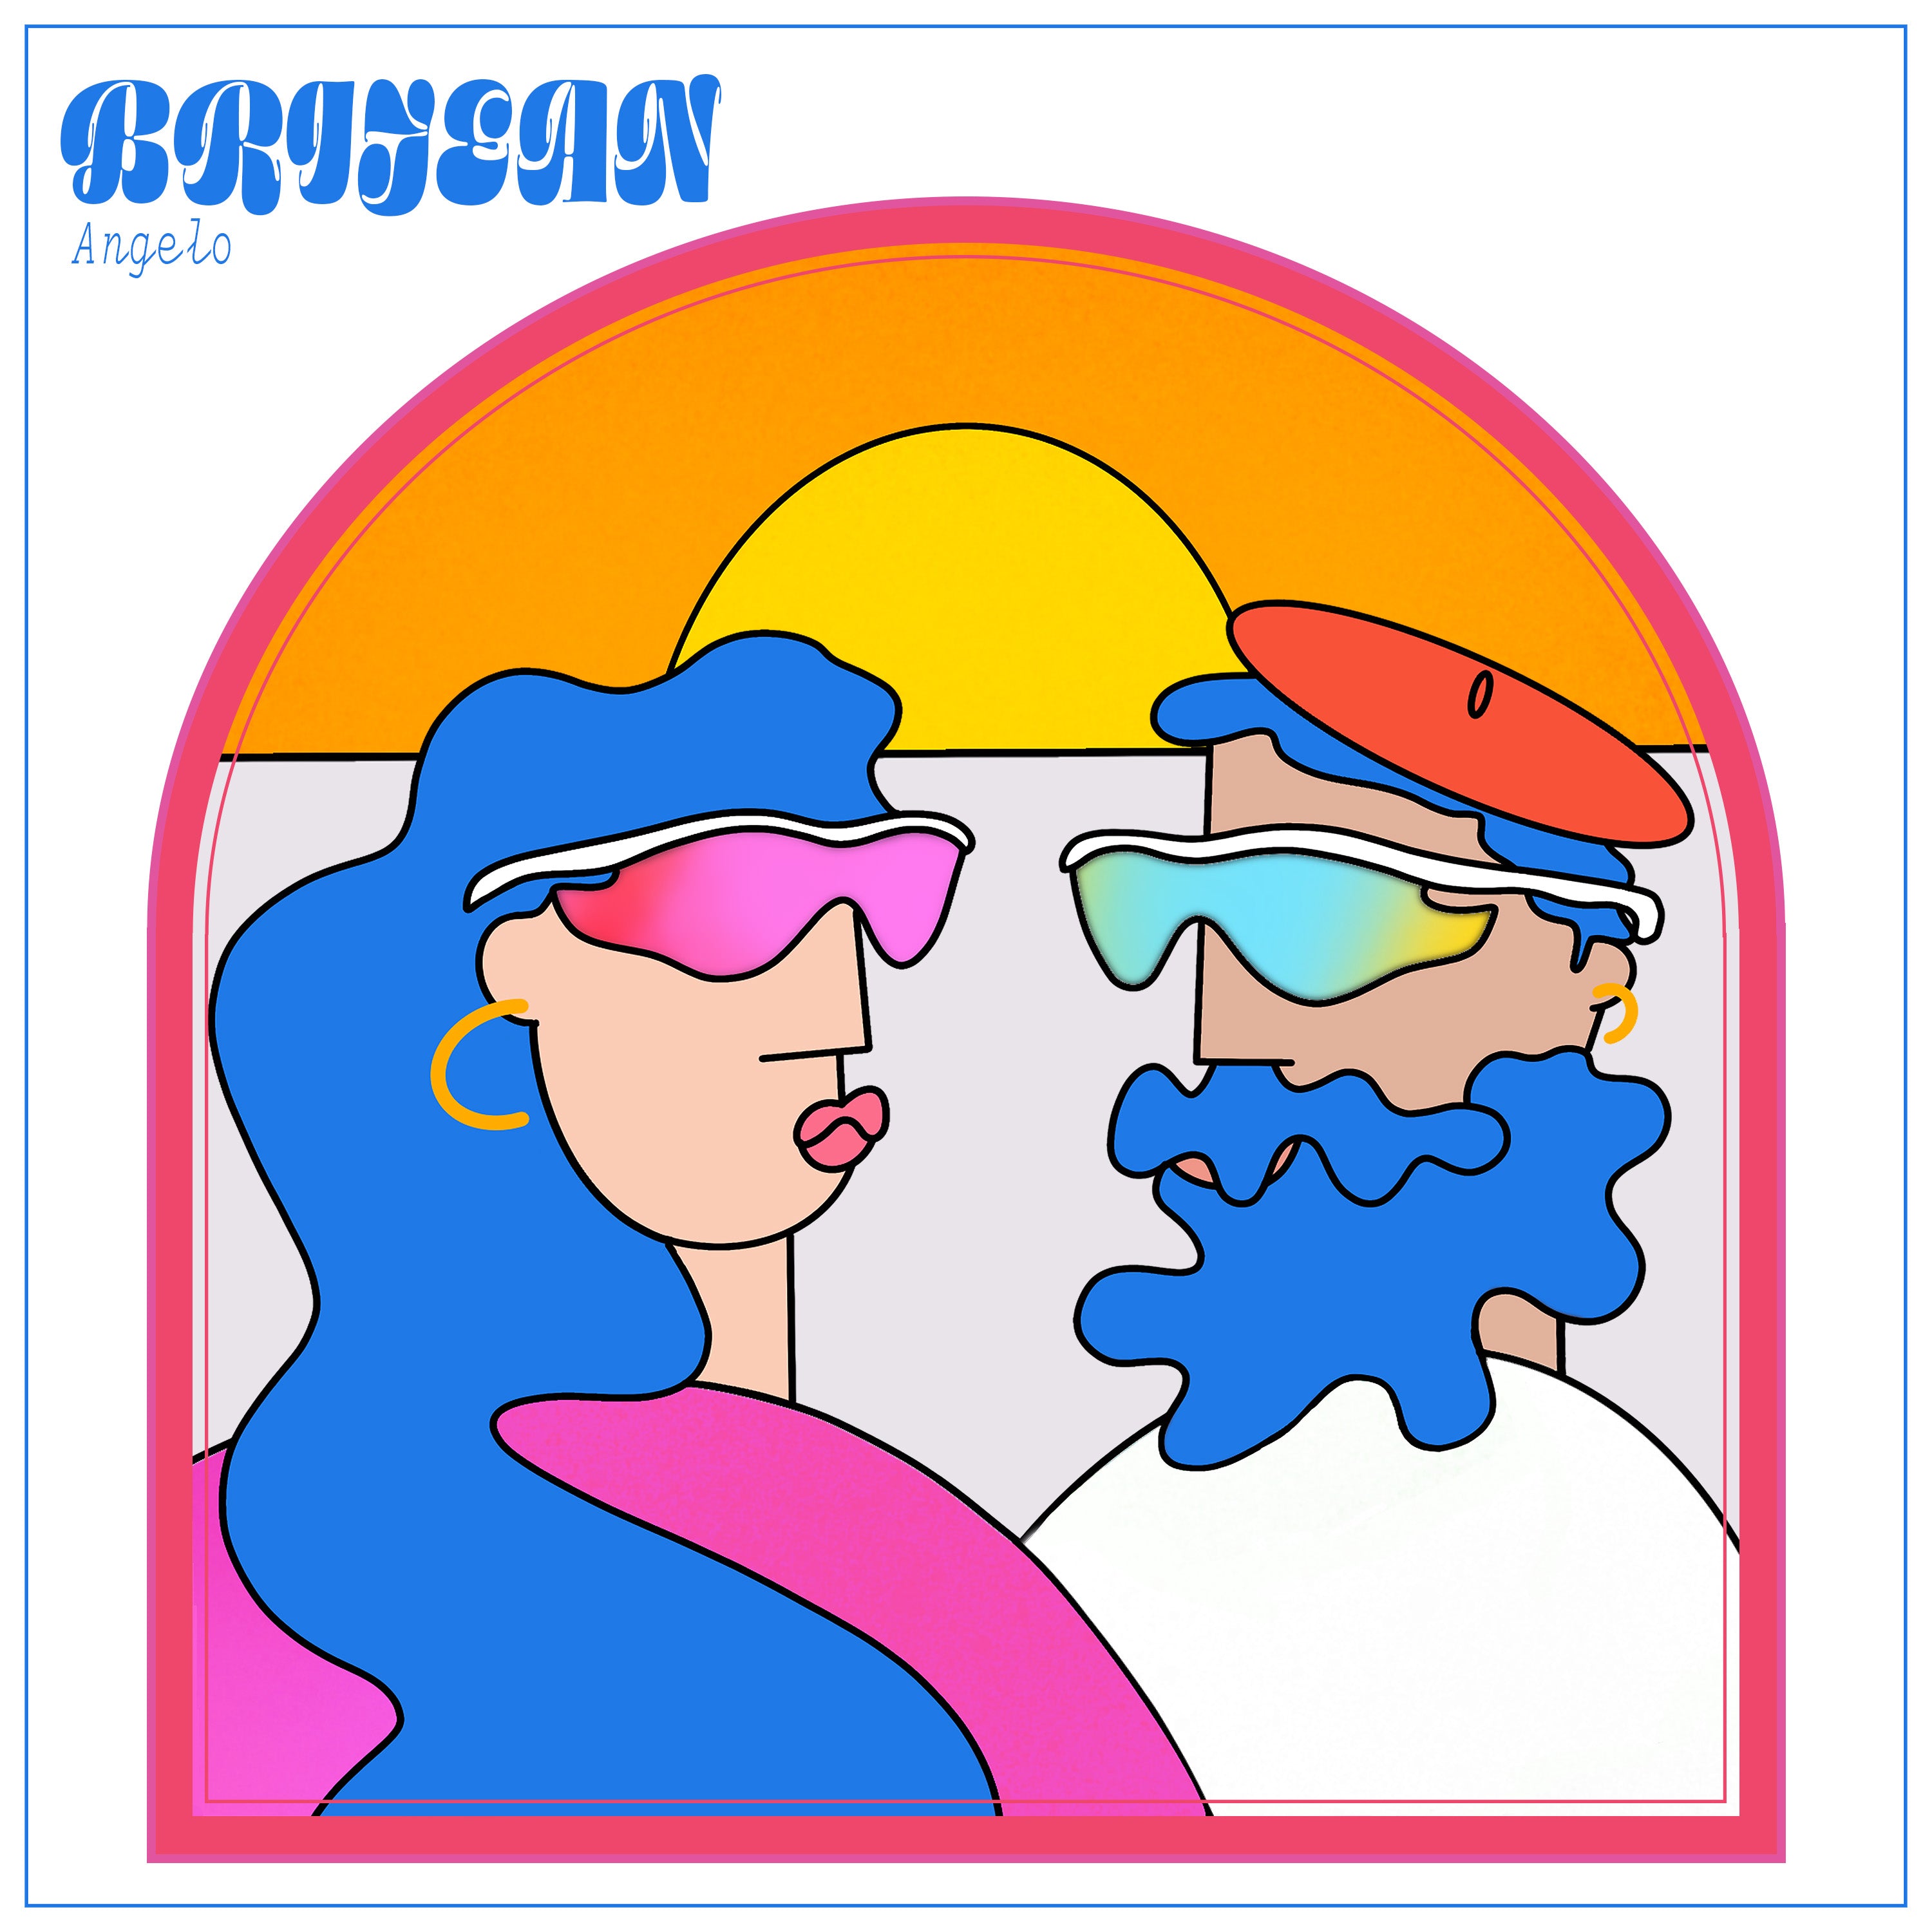 Brijean - Angelo [Pink & Blue Vinyl]